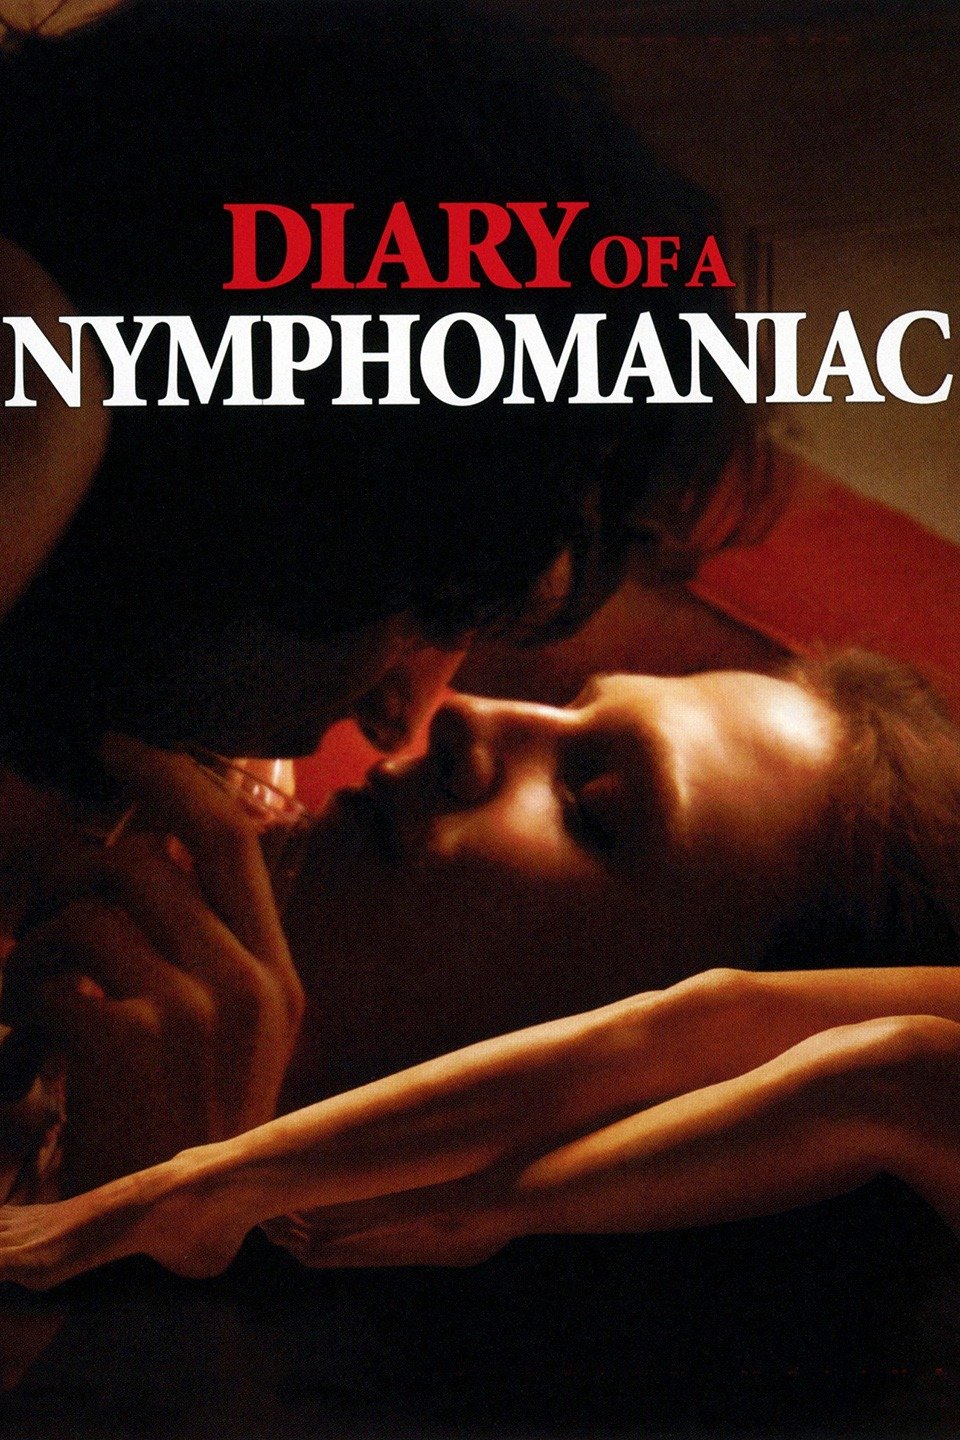 Nhật Ký Cô Nàng Nghiện Sex – Diary Of A Nymphomaniac (2008) Full HD Vietsub